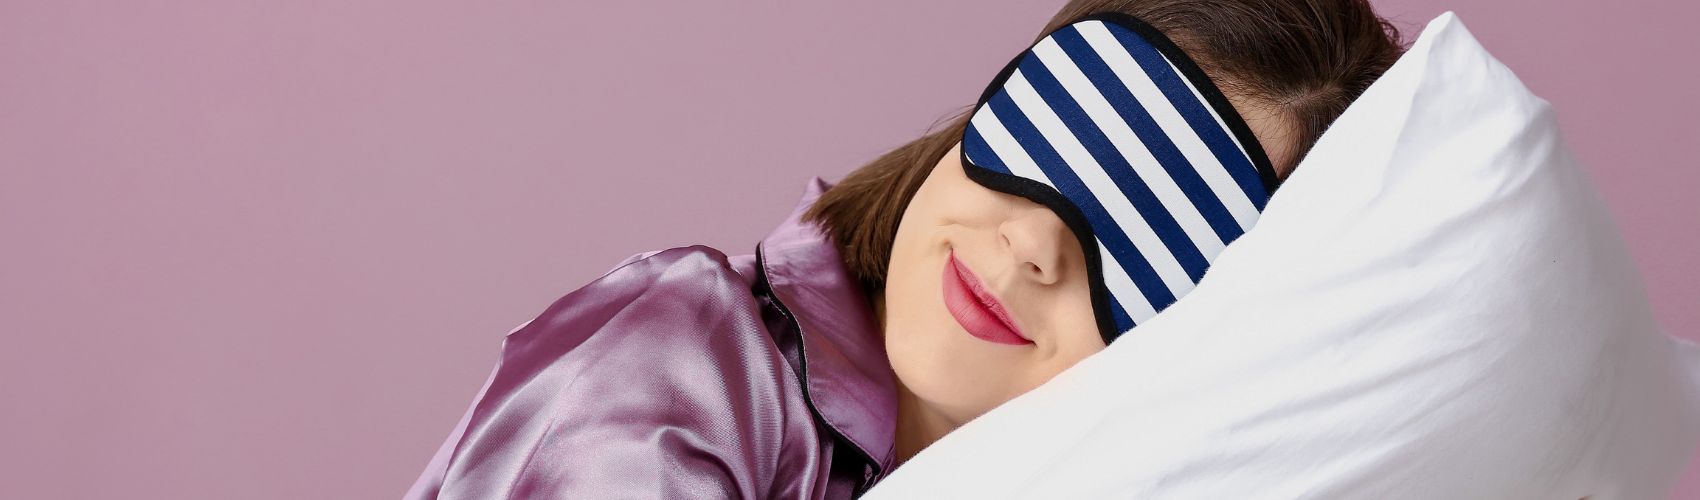 Woman with eye mask sleeping